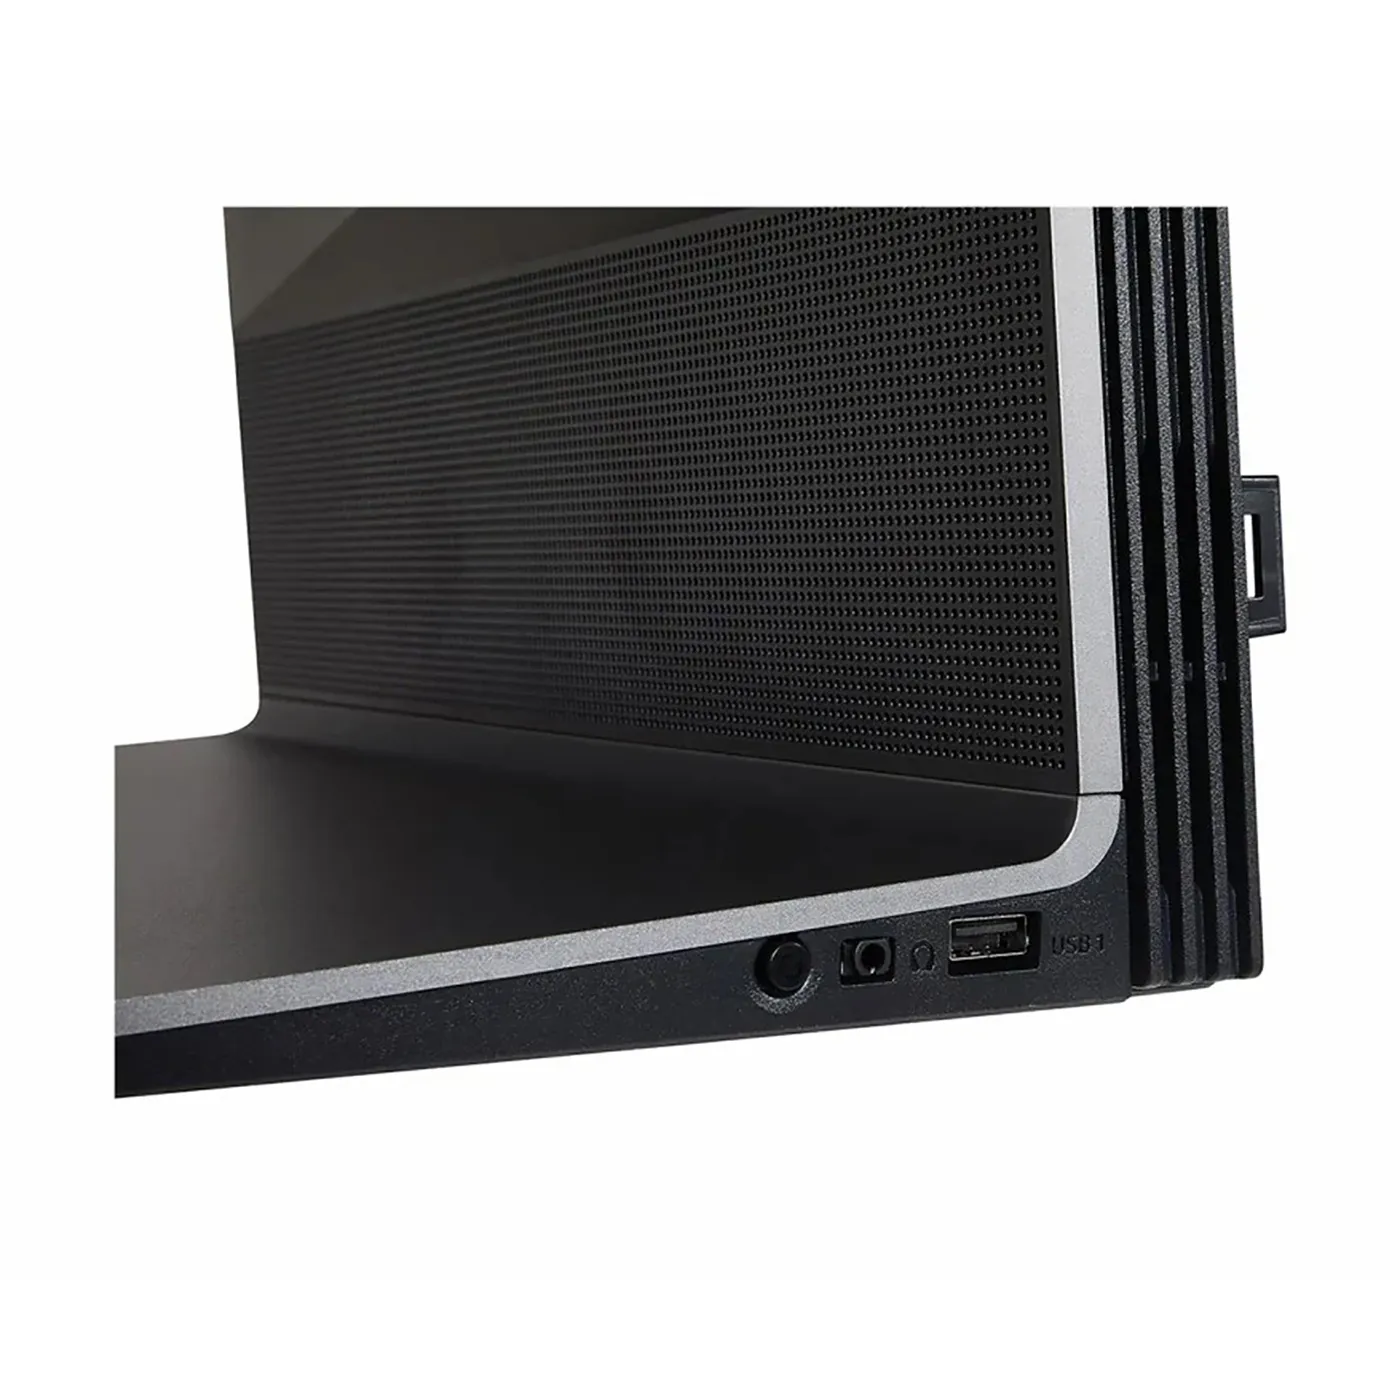 TV LG 42" Pulgadas 107 Cm 42LX3QPSA 4K-UHD OLED Smart TV